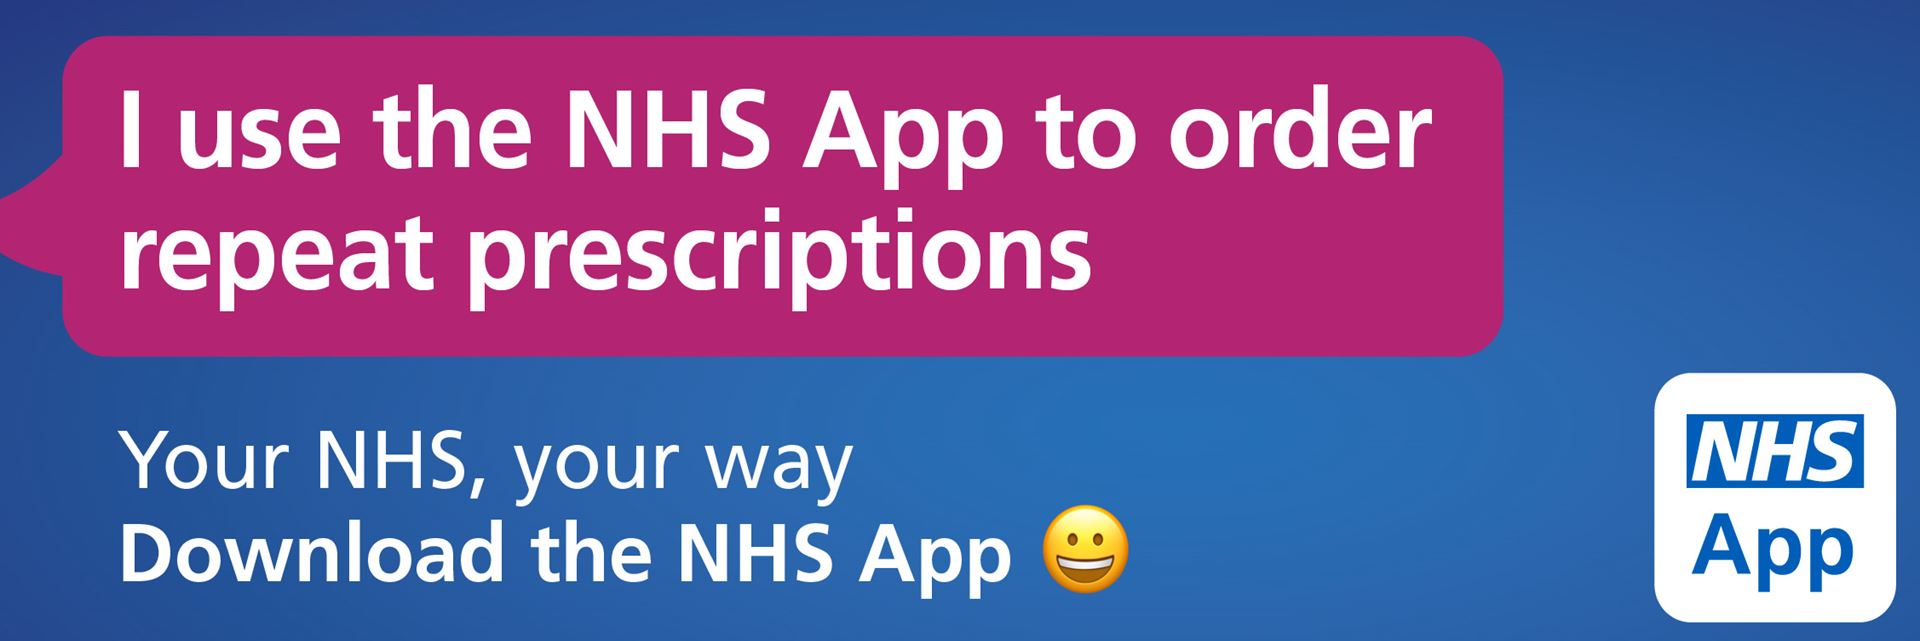 NHS App repeat prescriptions